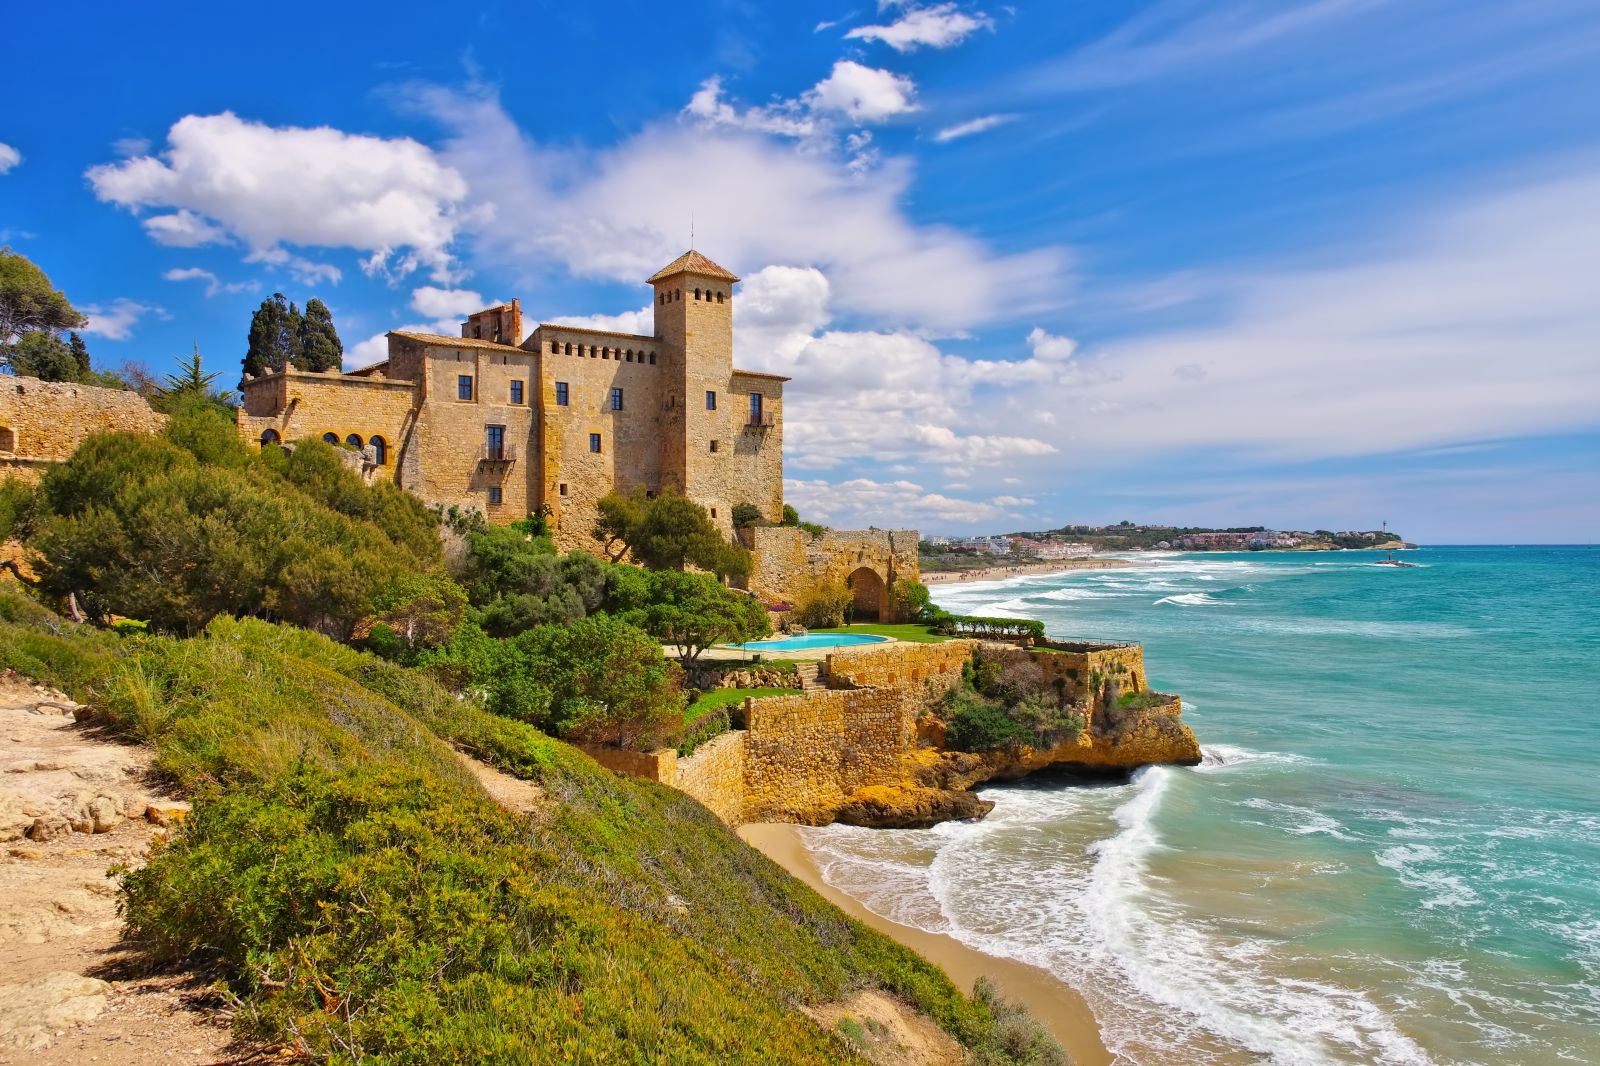 An der Costa Daurada liegen lange Sandstrände und historische Städte wie Tarragona. Hier das Castell de Tamarit in der Nähe der Stadt. ©LianeM/AdobeStock